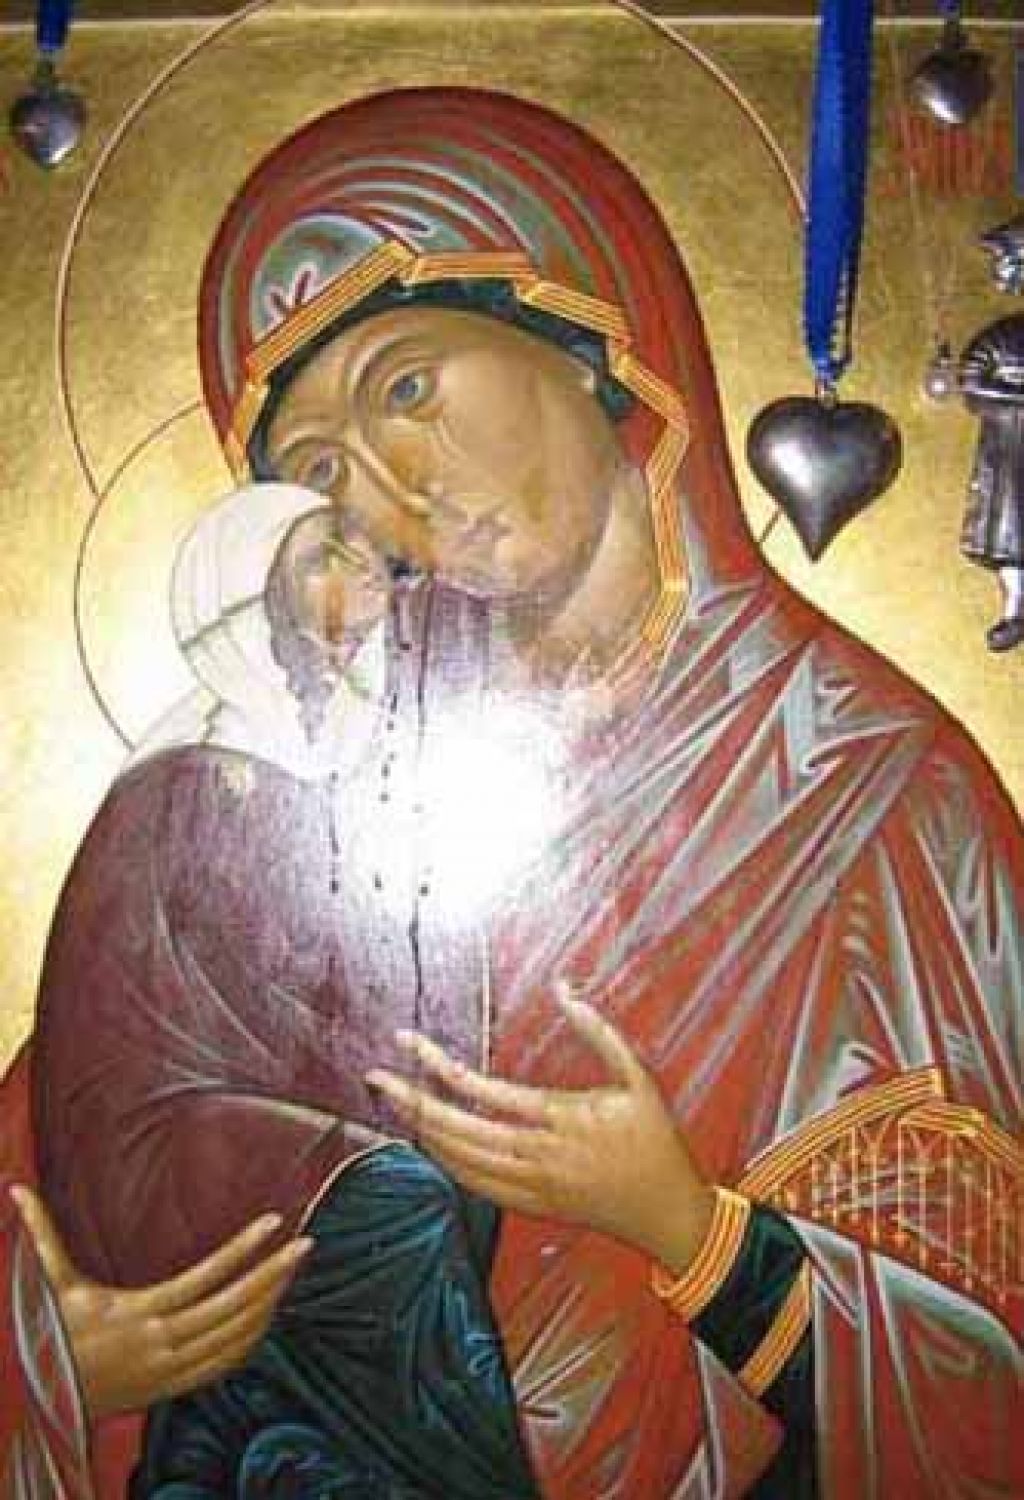 Božji srd? Verske ikone v Rusiji in Ukrajini krvavijo